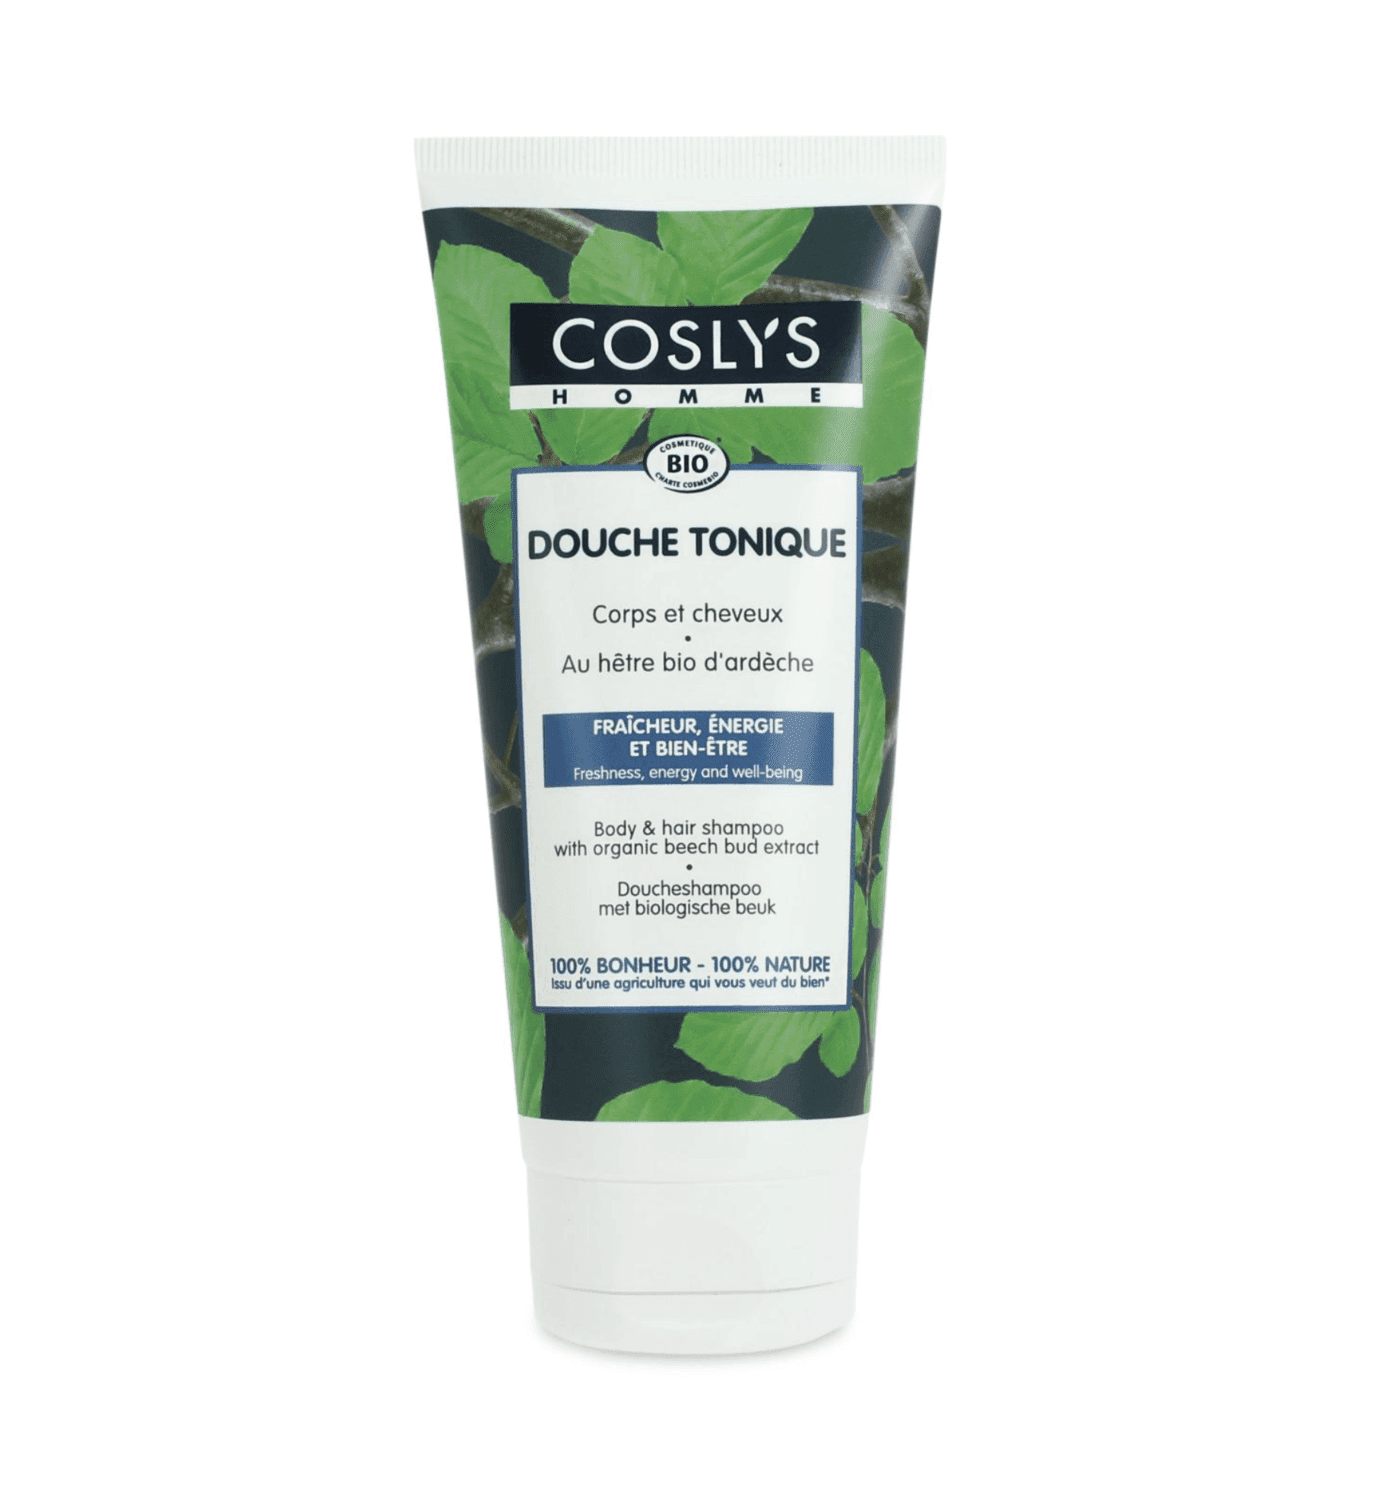 COSLYS - Sprchový šampon pro muže, HOMME BIO, 200 ml